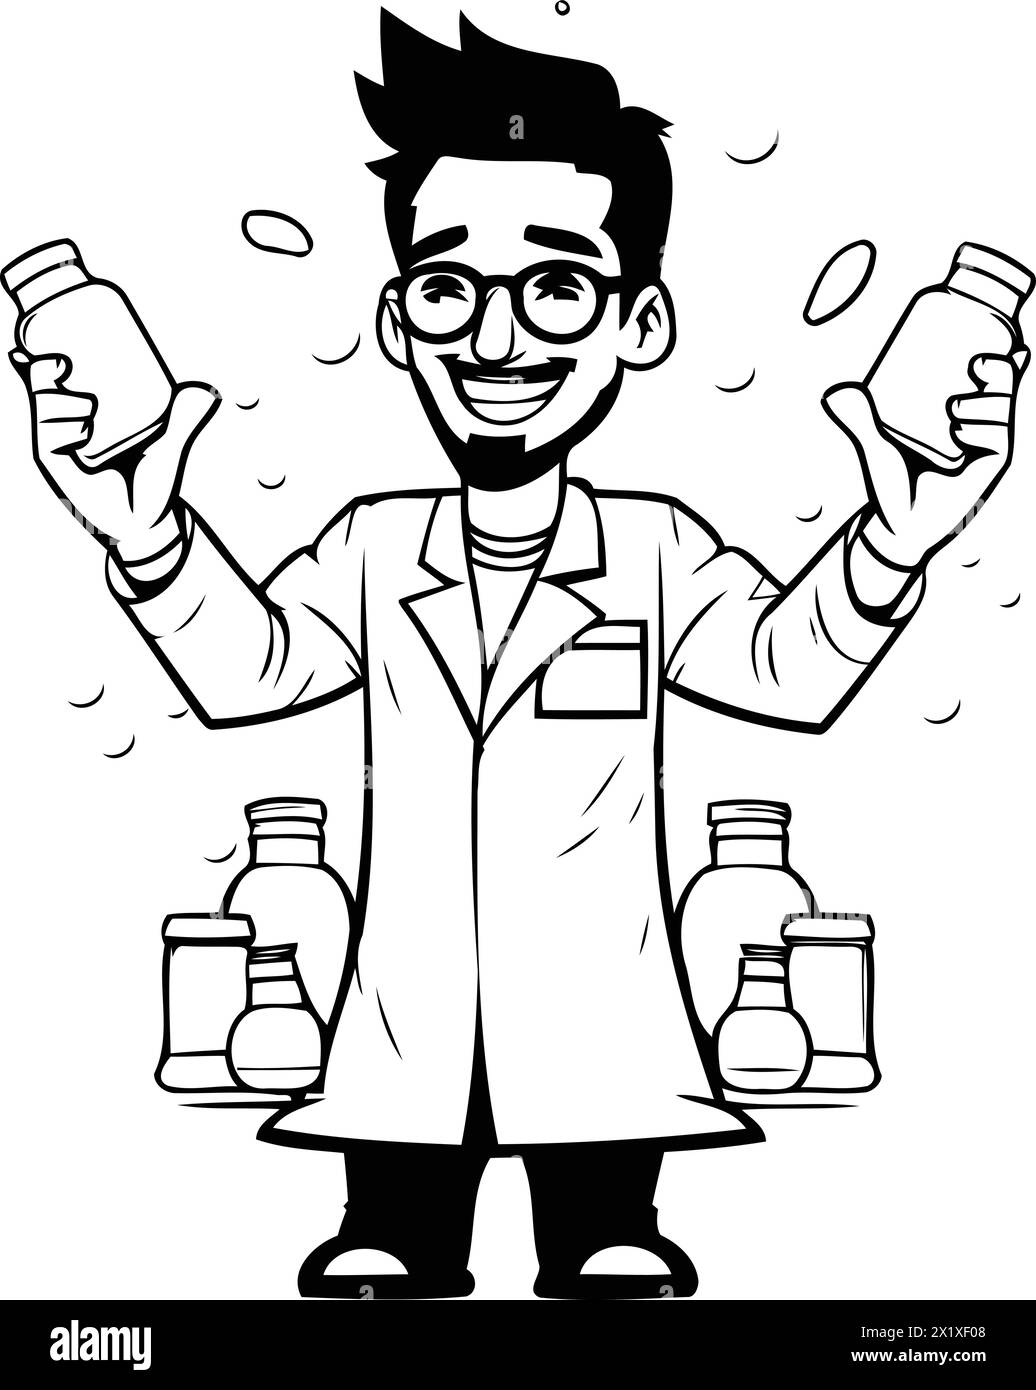 Cartoonarzt mit Arzneiflaschen. Vektorillustration im Cartoon-Stil. Stock Vektor